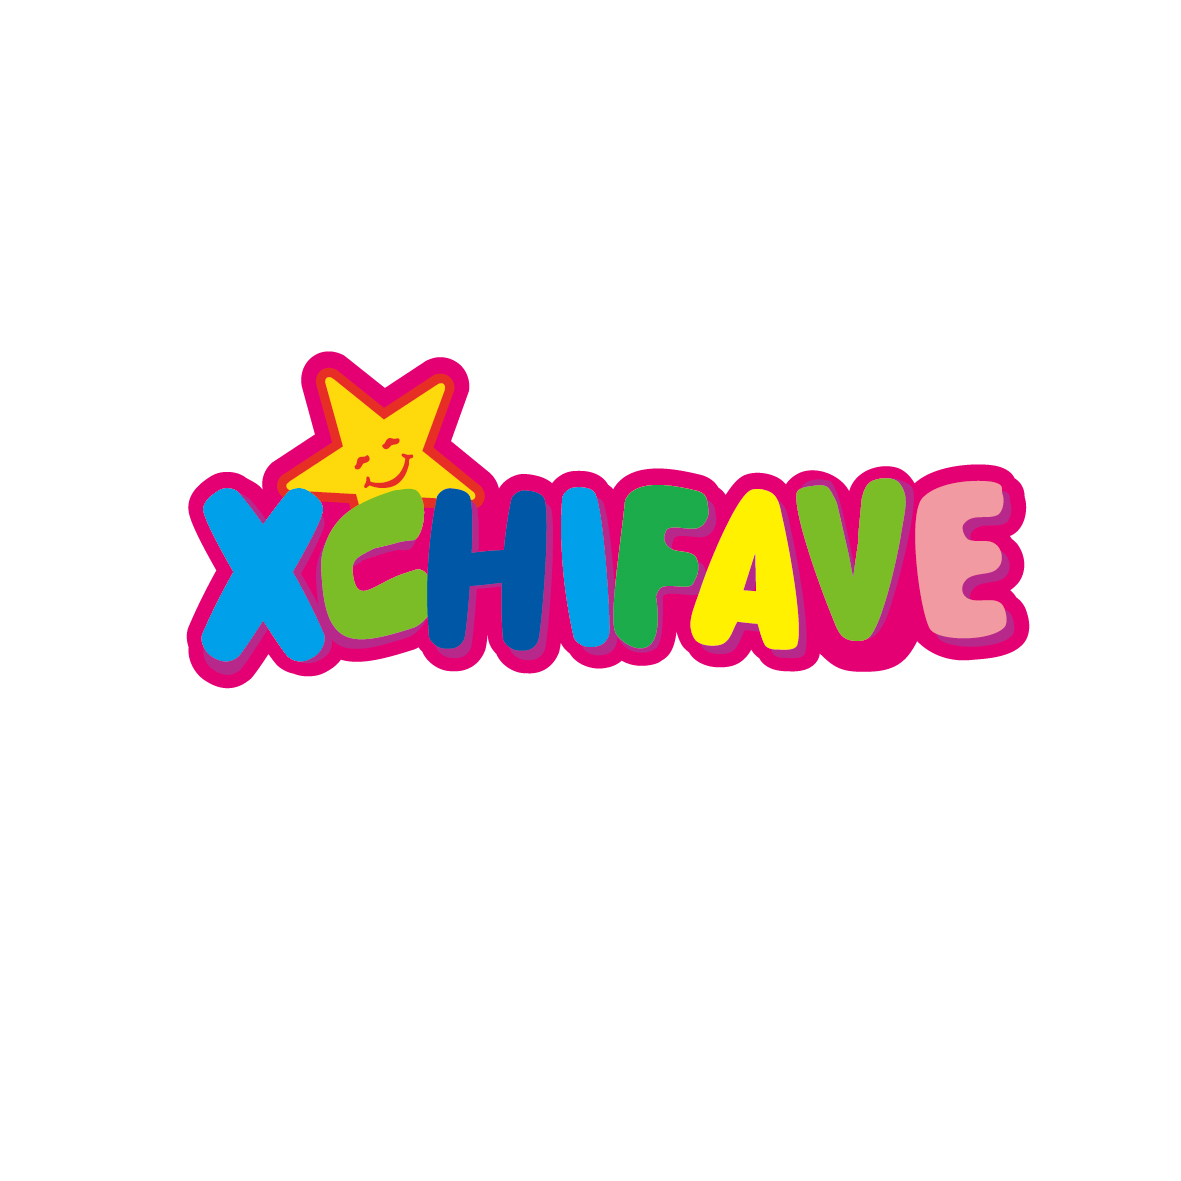 广州锦泰荣网络科技有限公司商标XCHIFAVE（35类）商标转让流程及费用